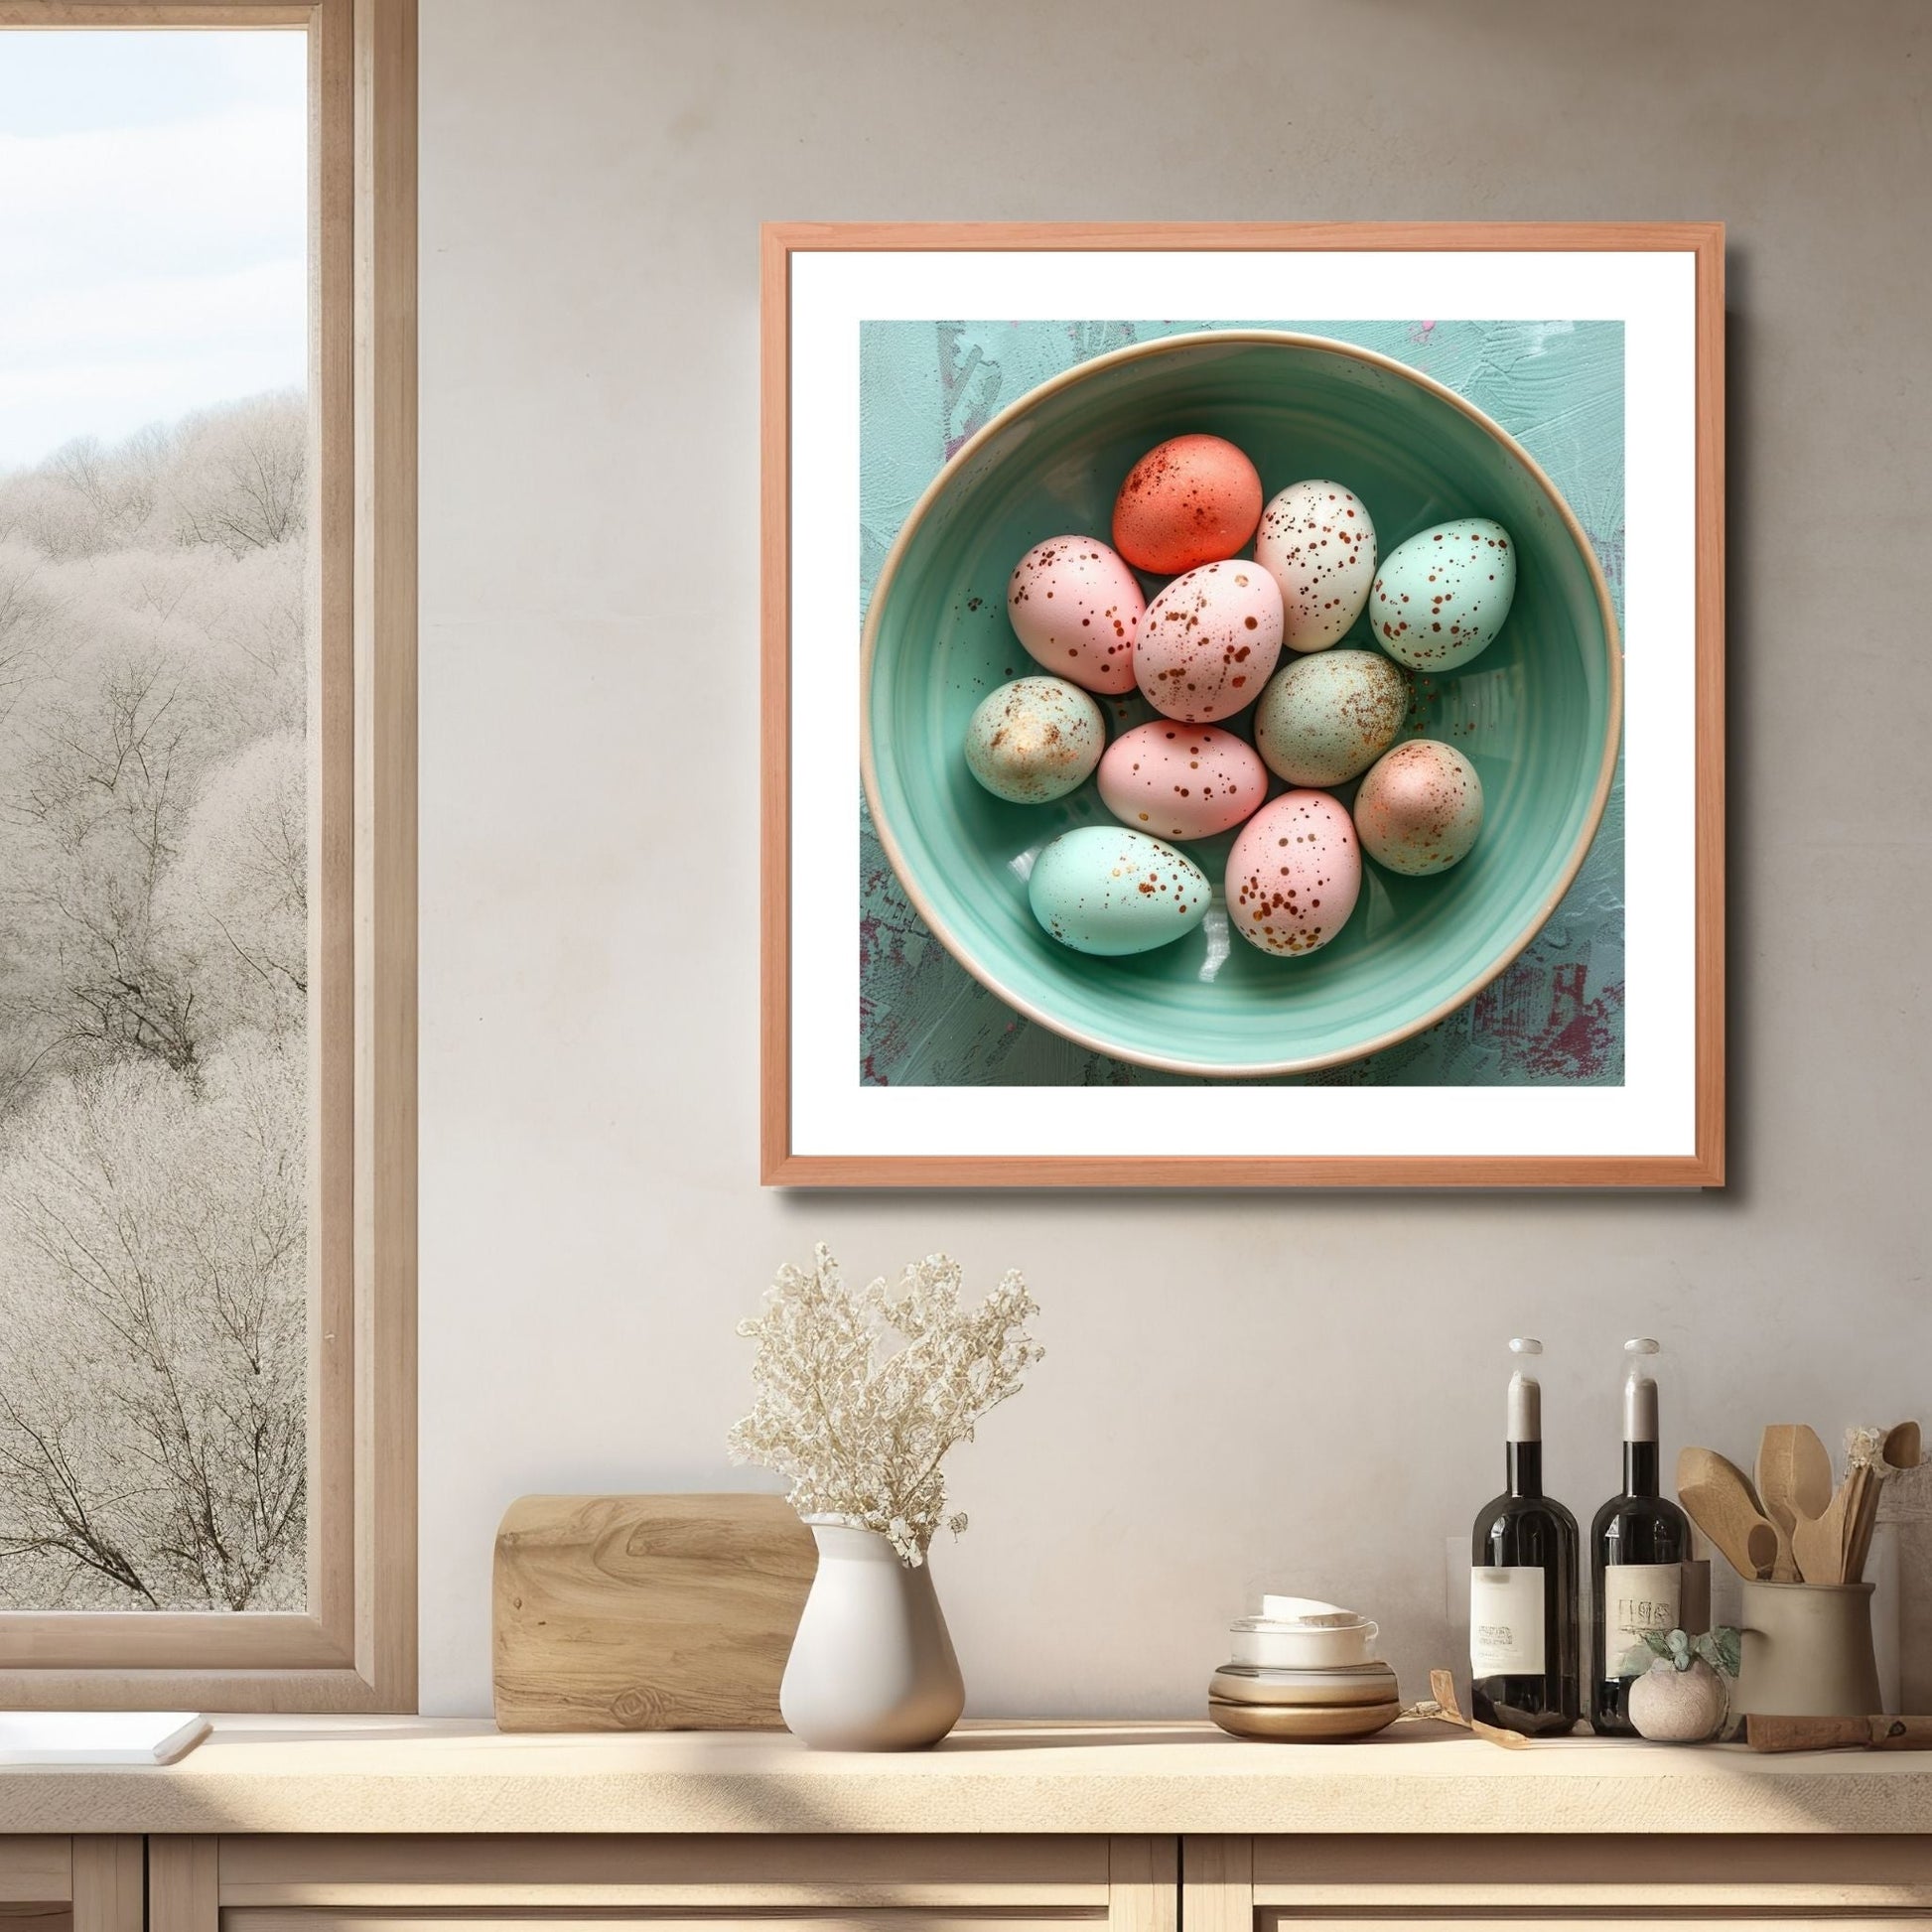 Grafisk illustrasjon av påskeegg i herlige rosa og turkise nyanser, dekorert med lekre gullprikker. Eggene ligger i en turkis keramikkskål. Illustrasjonsfoto viser bildet i kvadratisk format i ramme over en kjøkkenbenk.